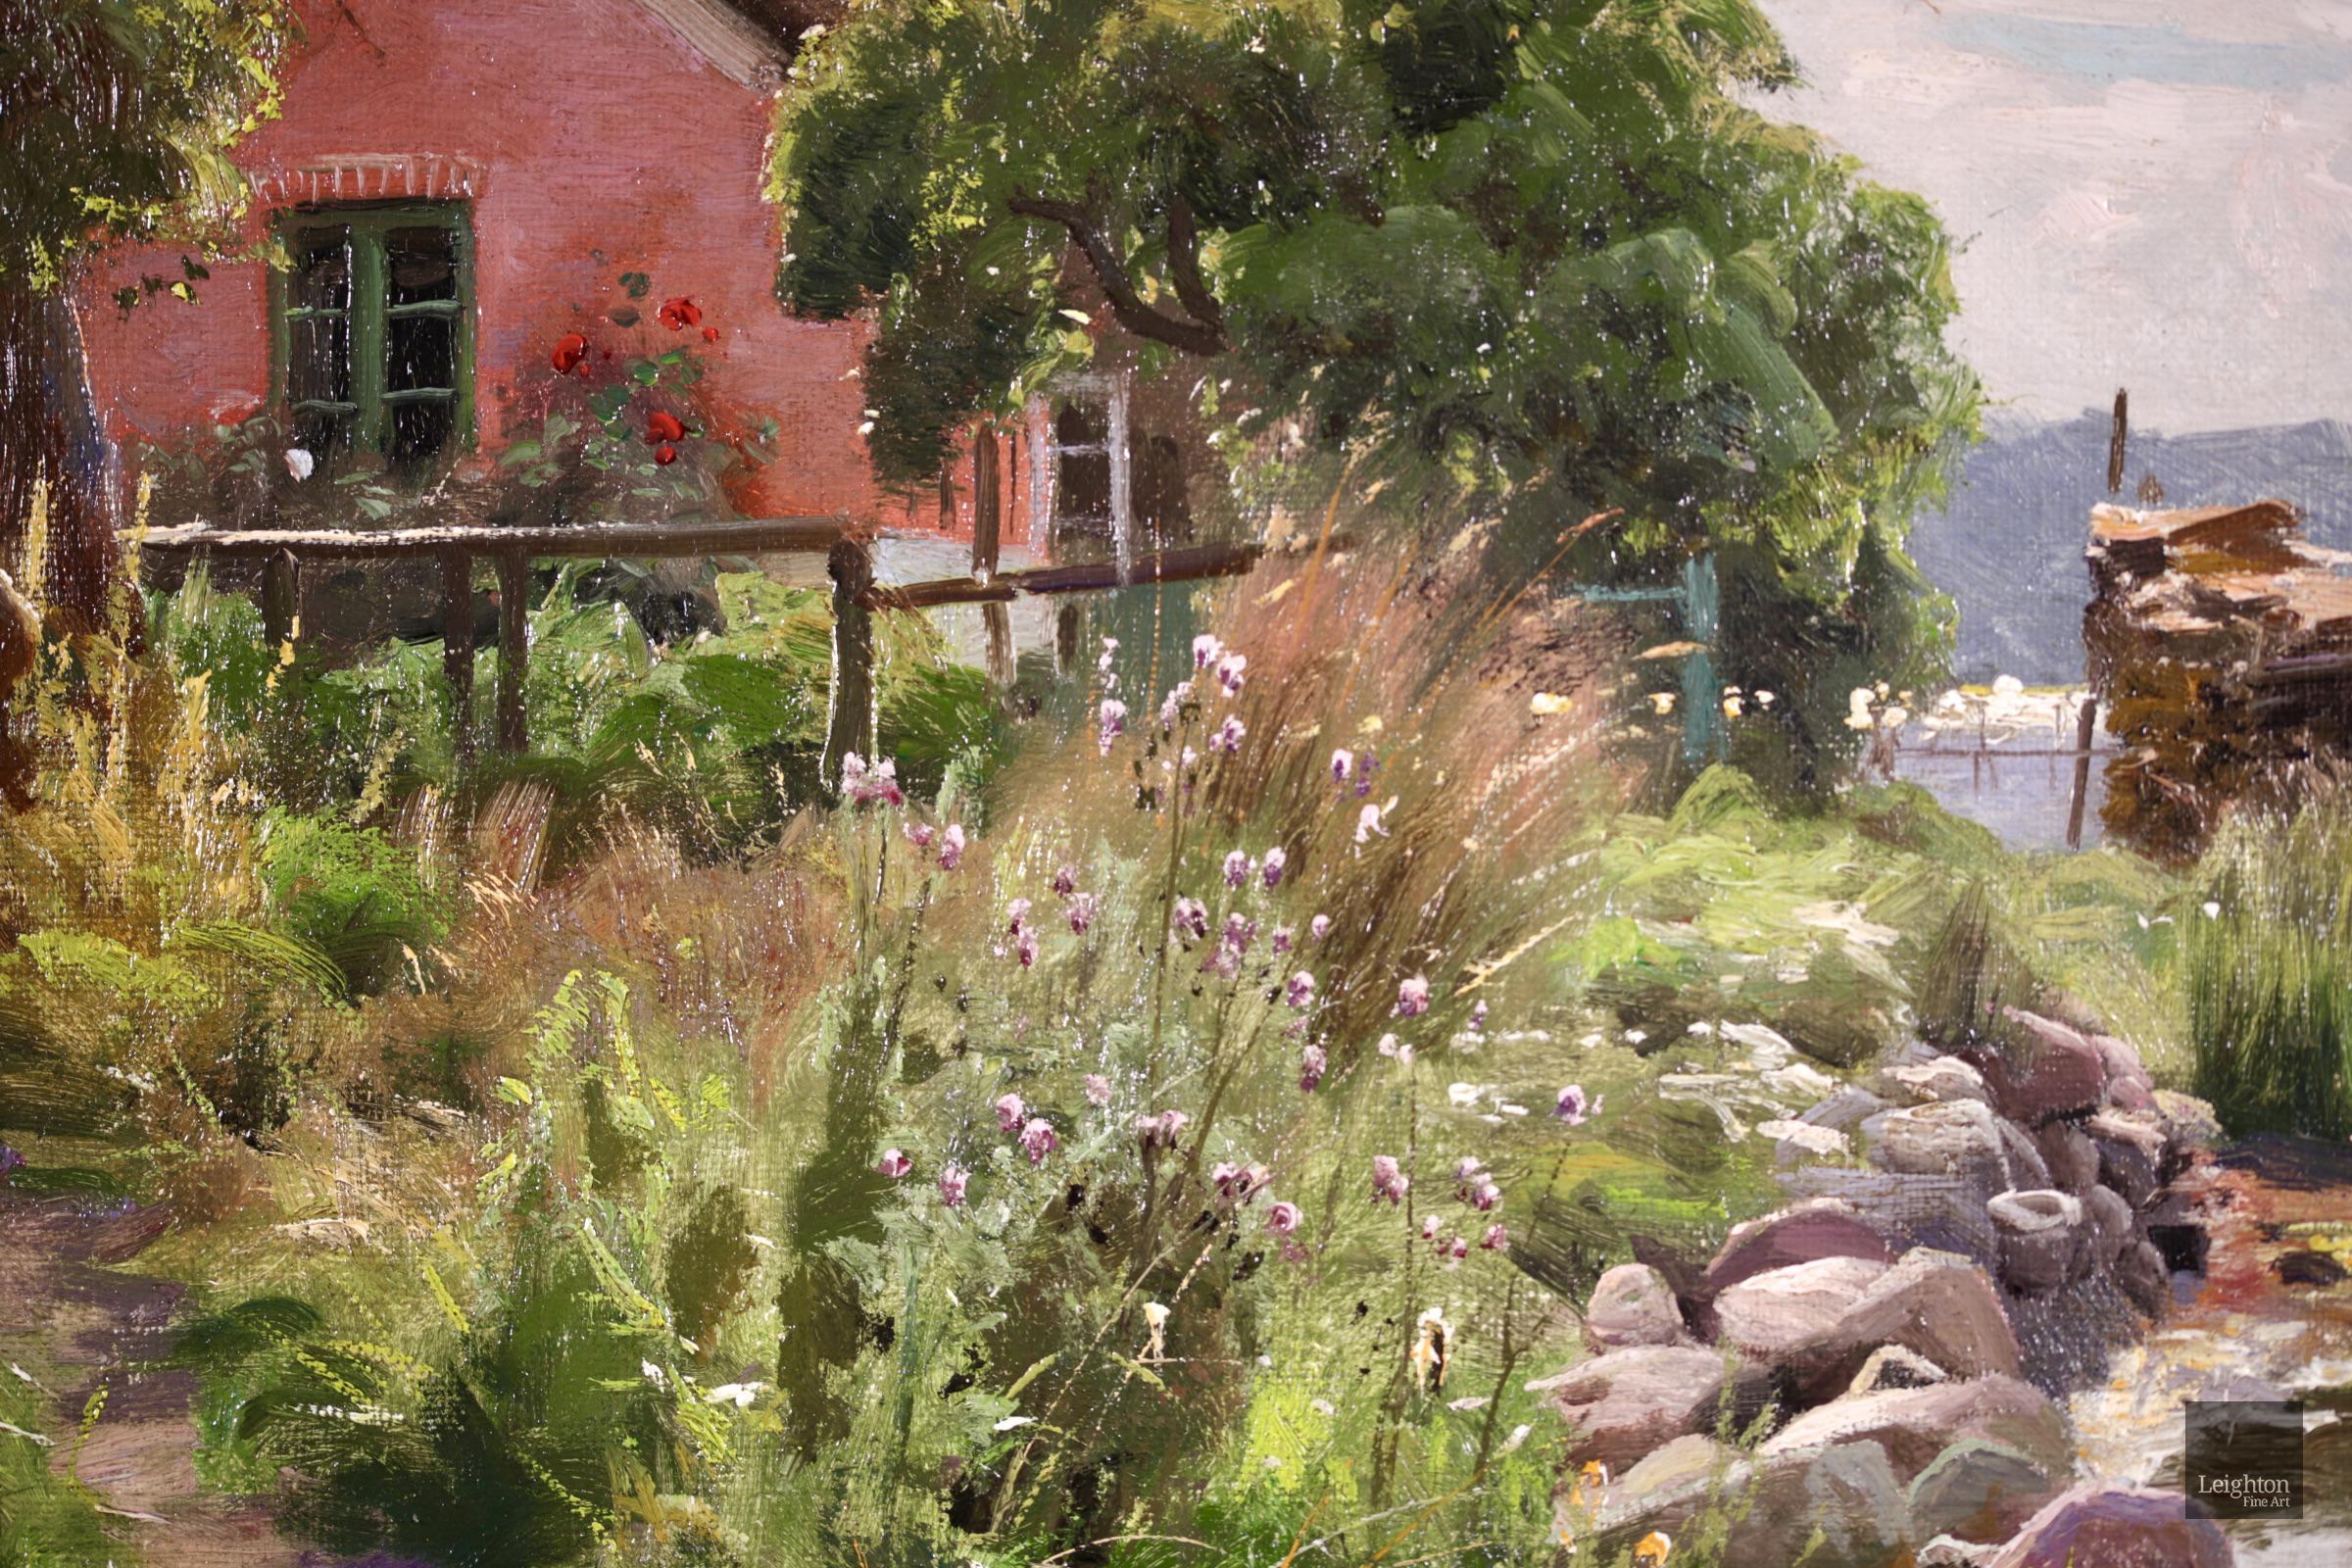 Eine charmante Flusslandschaft in Öl auf Leinwand des dänischen Realisten Peder Mork Monsted. Das Gemälde zeigt eine schöne Frühlingslandschaft an einem strahlenden Tag. Ein Mann steht am Ufer eines Flusses vor einem rosafarbenen Häuschen und